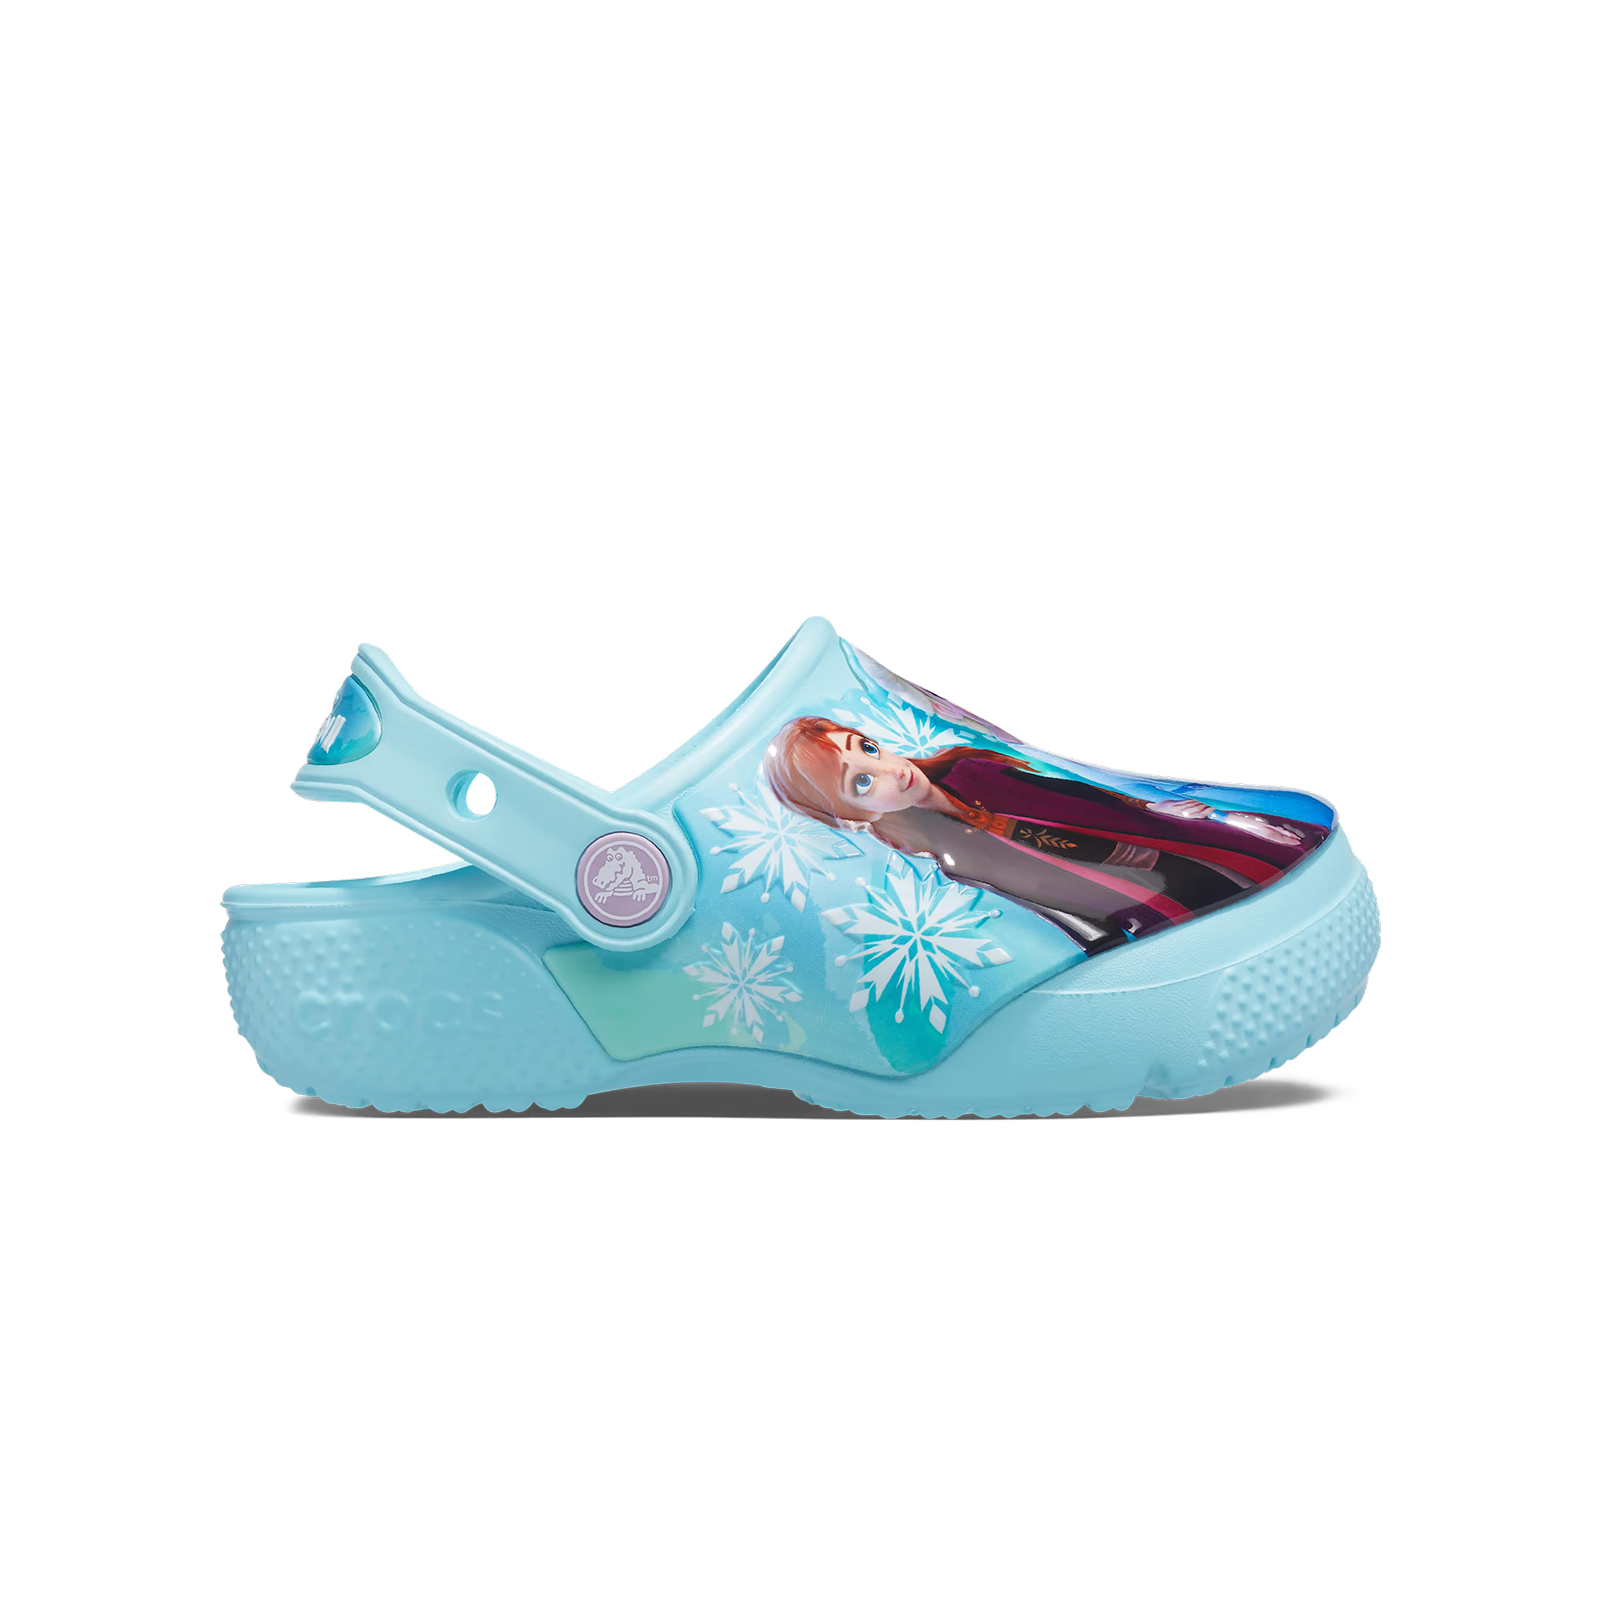 Crocs - FL DISNEY FROZEN II CLOG K - ICE BLUE Παιδικά > Παπούτσια > Clogs > Glogs